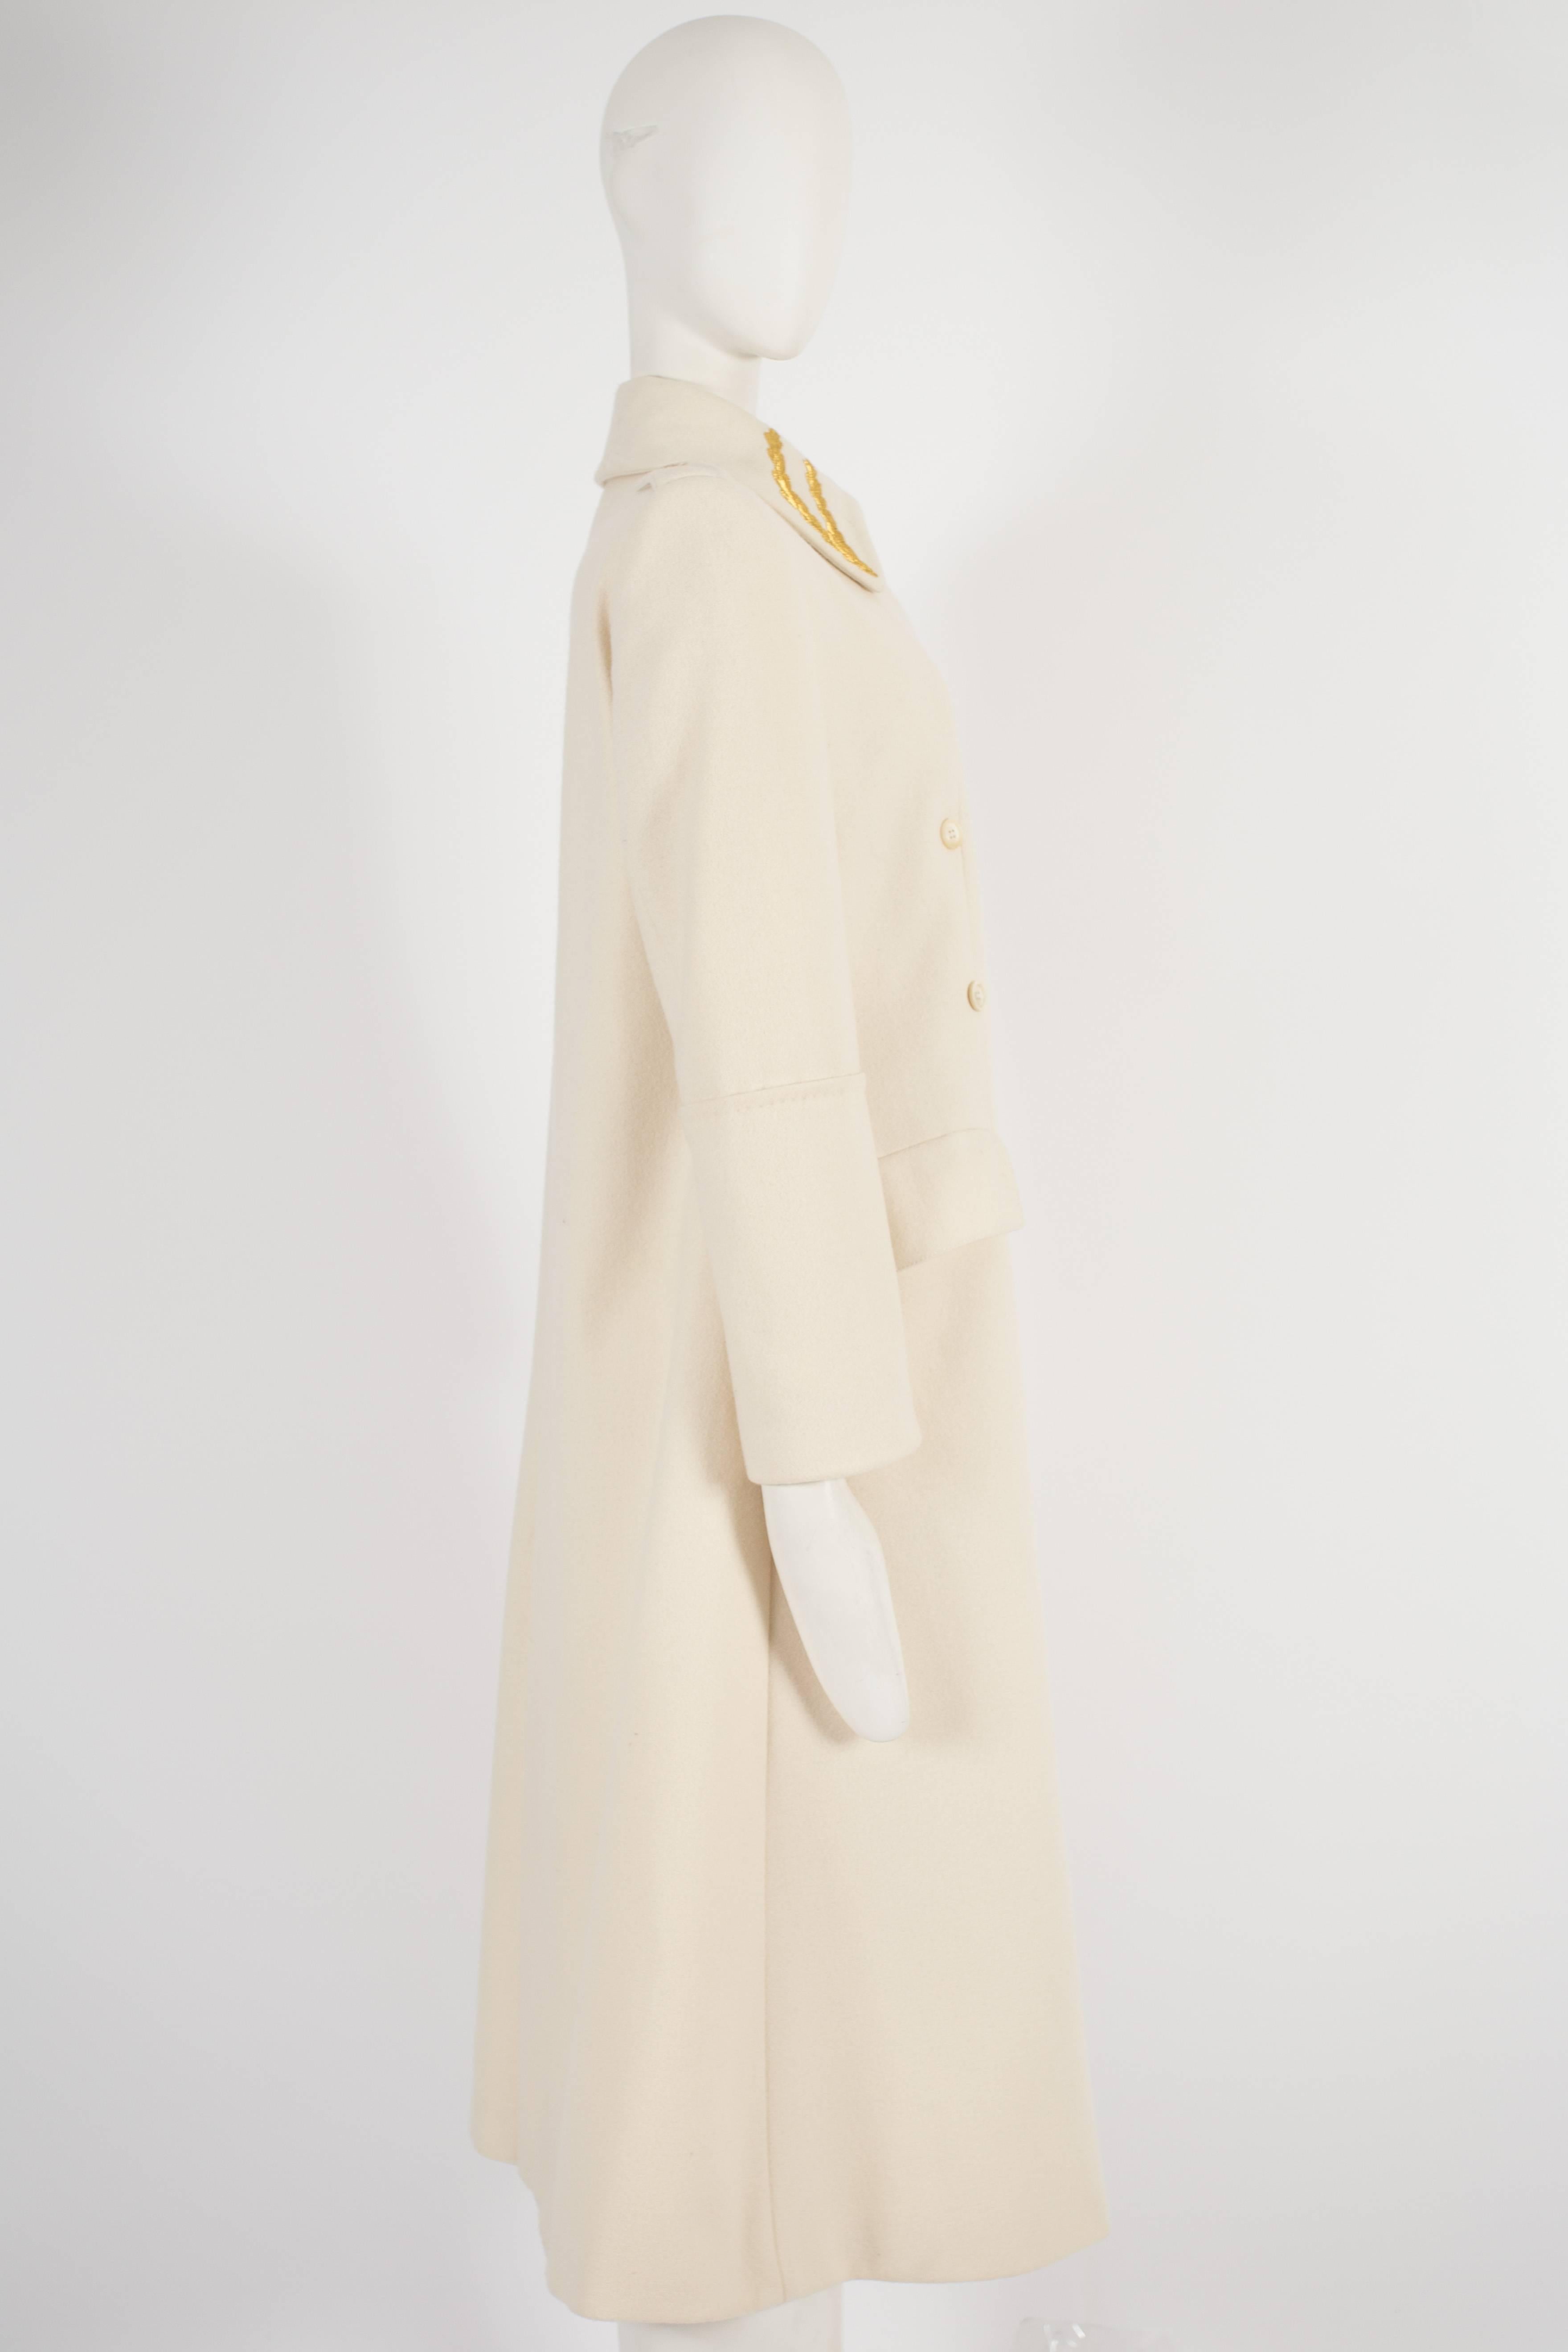 Women's Alexander McQueen tailored cream wool coat, circa 1990s For Sale